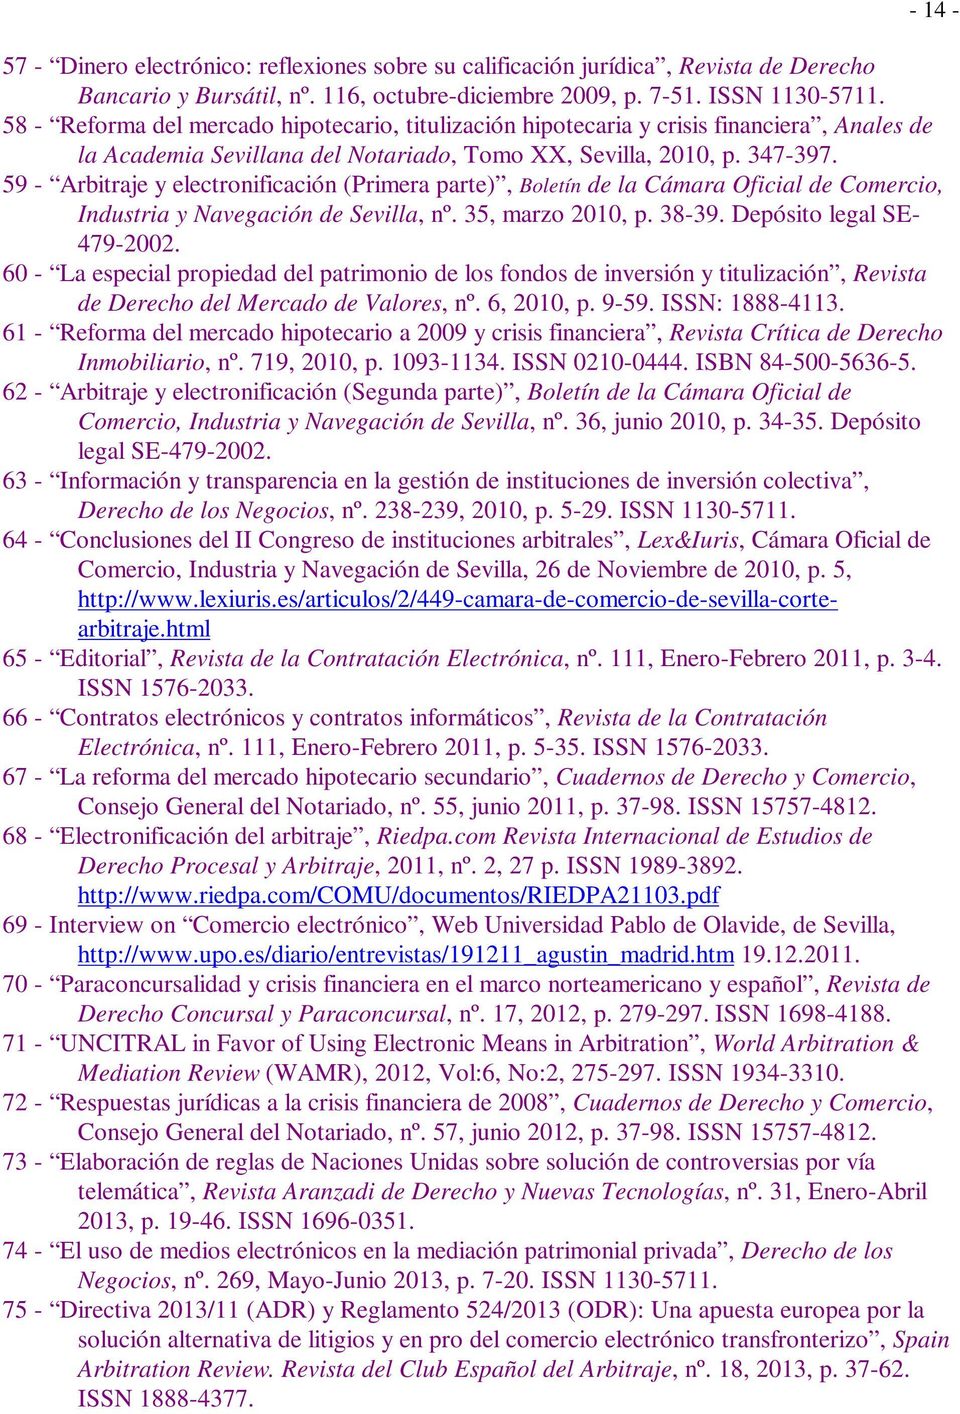 59 - Arbitraje y electronificación (Primera parte), Boletín de la Cámara Oficial de Comercio, Industria y Navegación de Sevilla, nº. 35, marzo 2010, p. 38-39. Depósito legal SE- 479-2002.